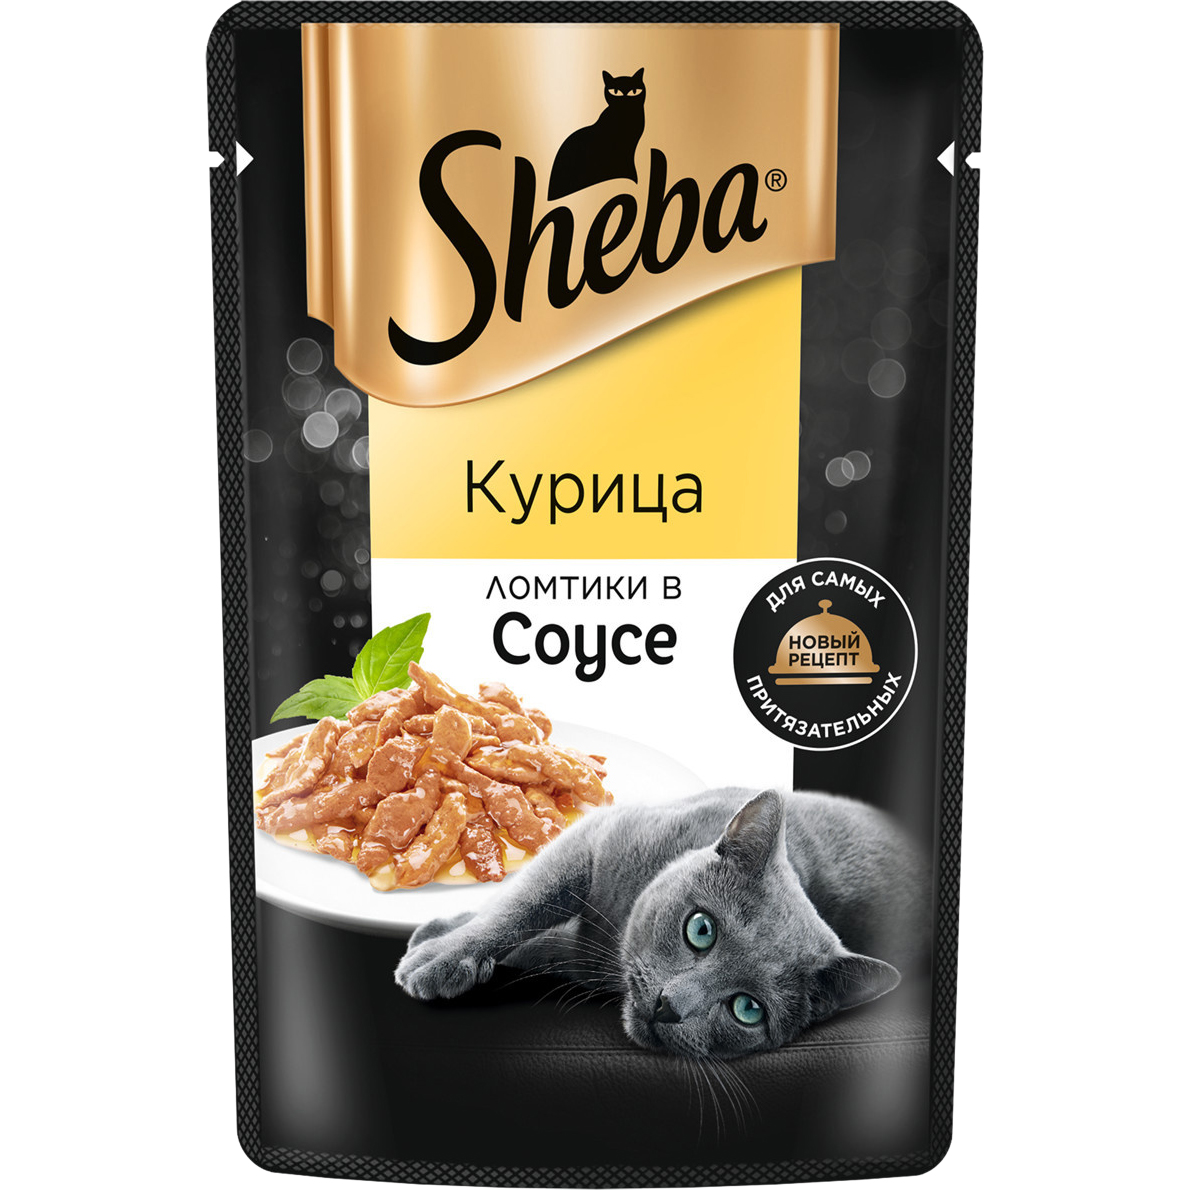 Корм для кошек Sheba Курица ломтики в соусе 75 г корм для кошек sheba форель и креветки ломтики в соусе 75 г